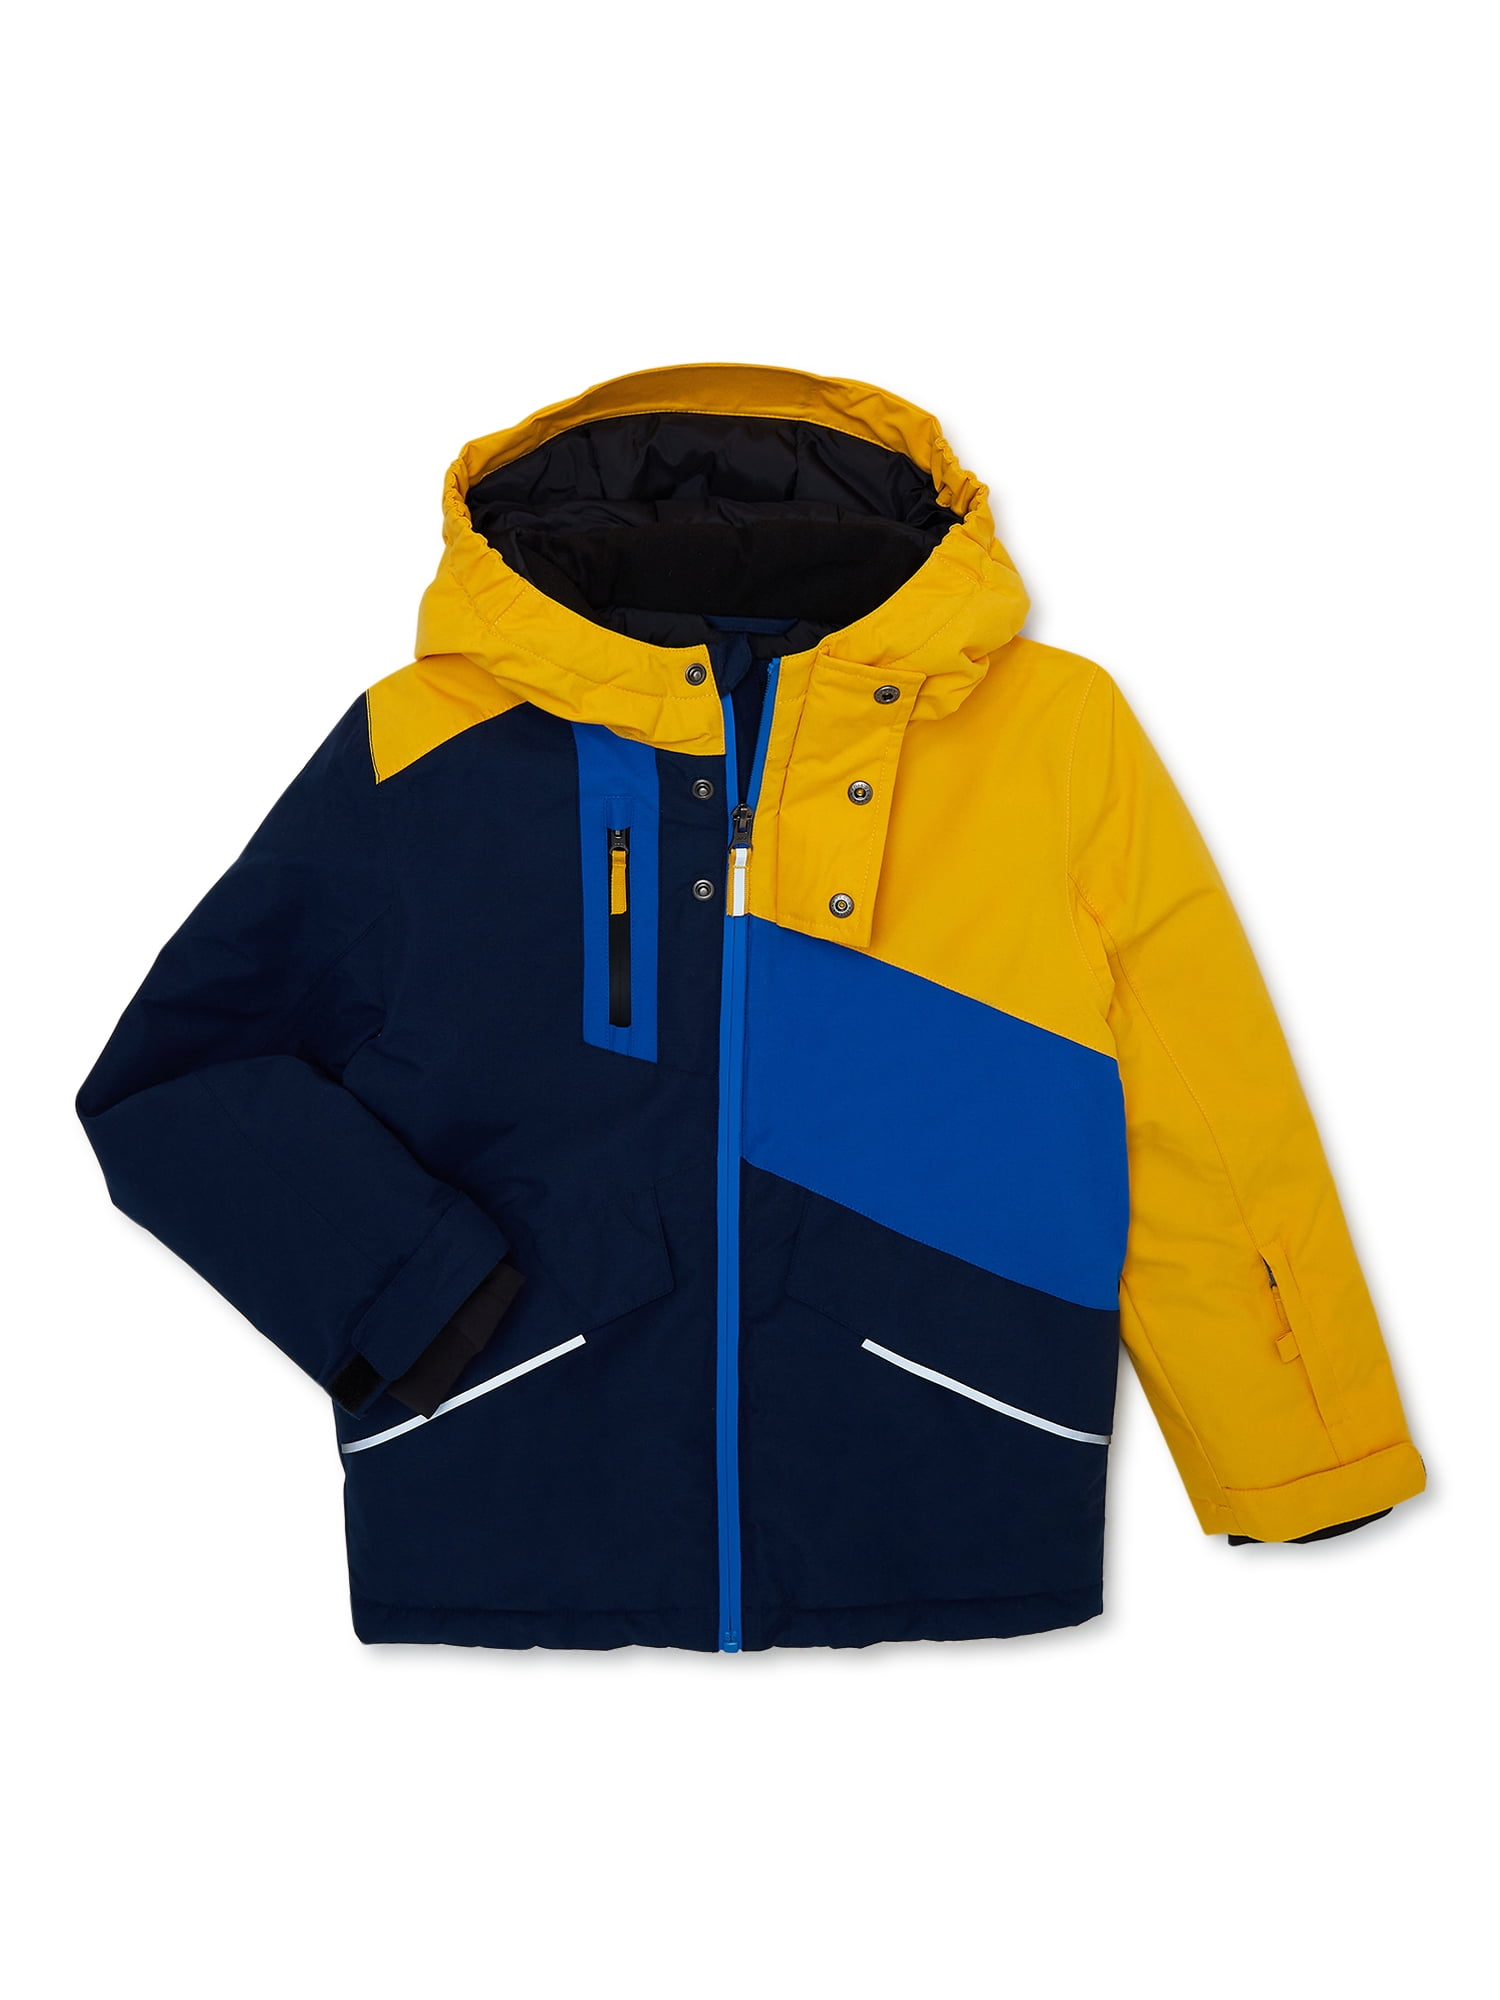 Swiss Tech Boys Waterproof Ski Jacket with Hood, Sizes 4-18 | Übergangsjacken